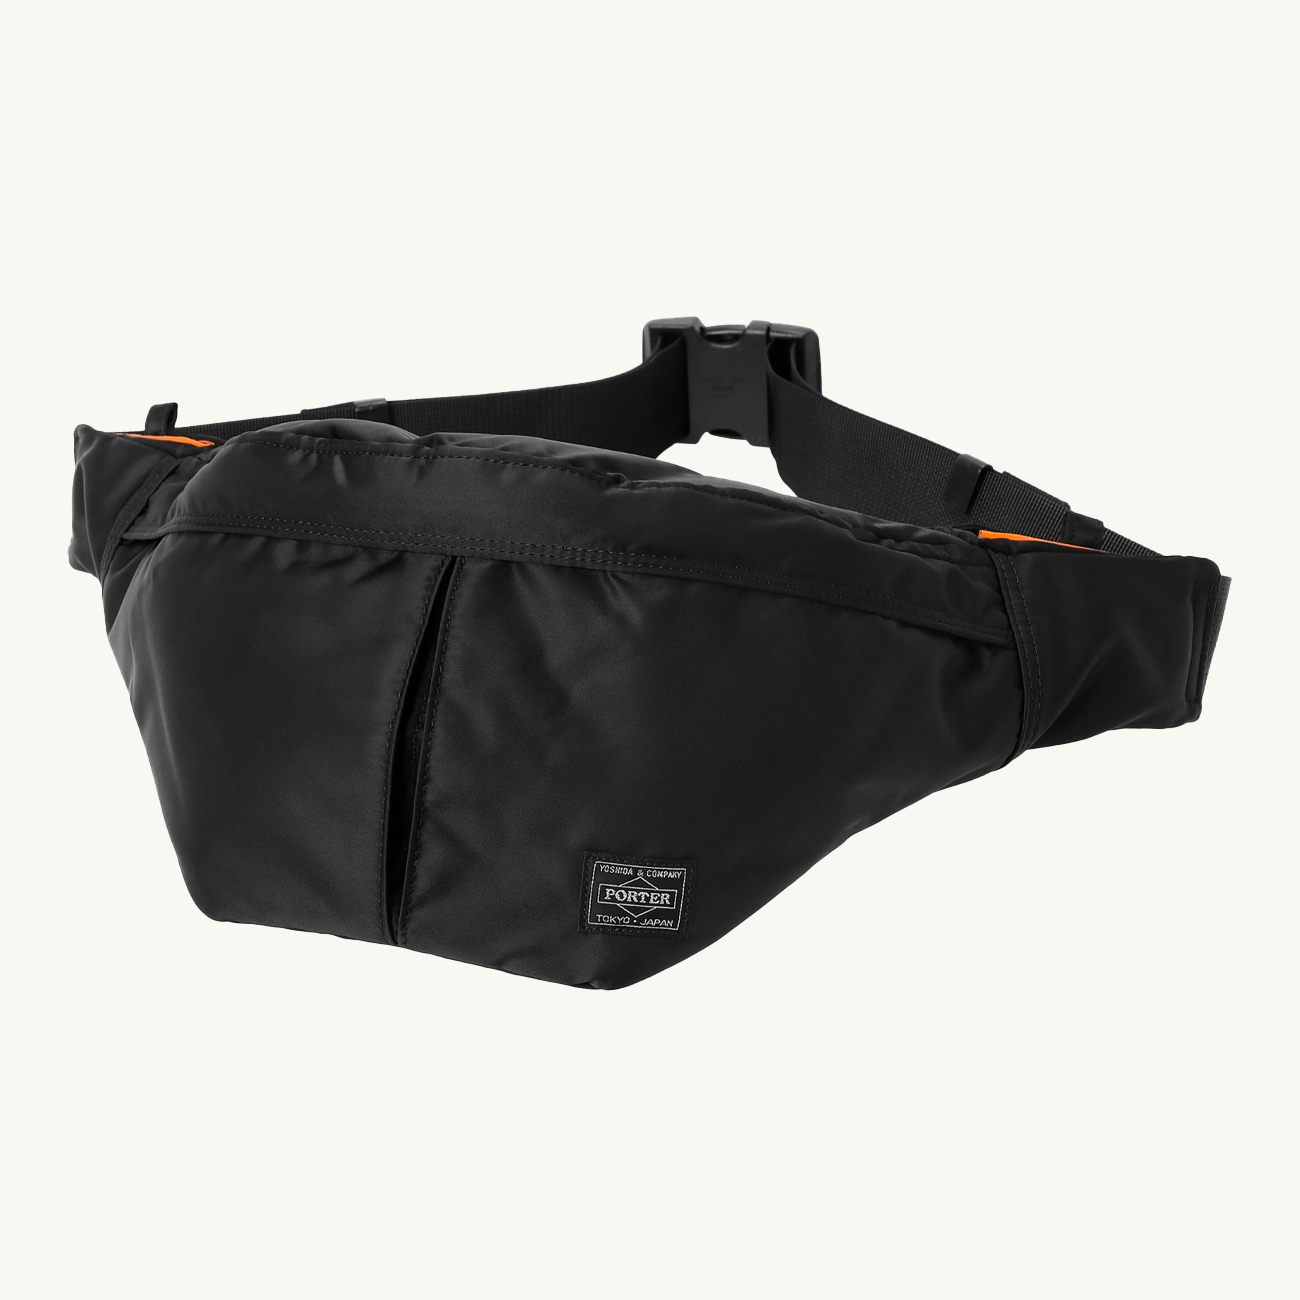 Tanker Waist Bag Large - Black